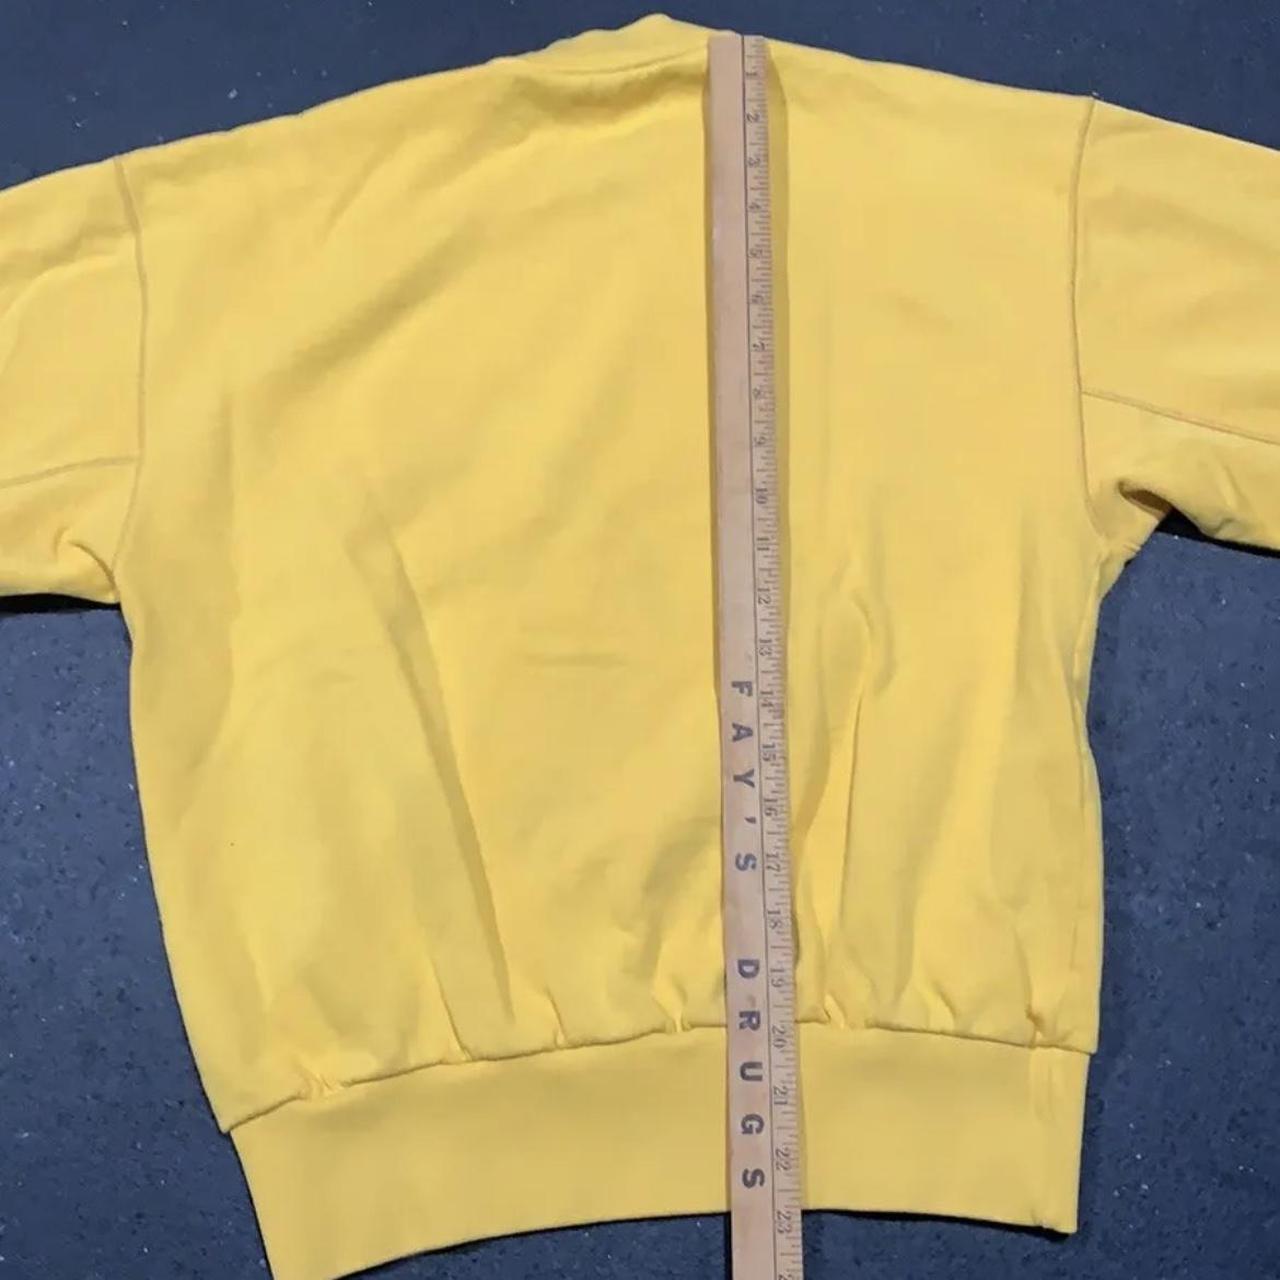 Aries Women's Yellow and Burgundy Sweatshirt (4)